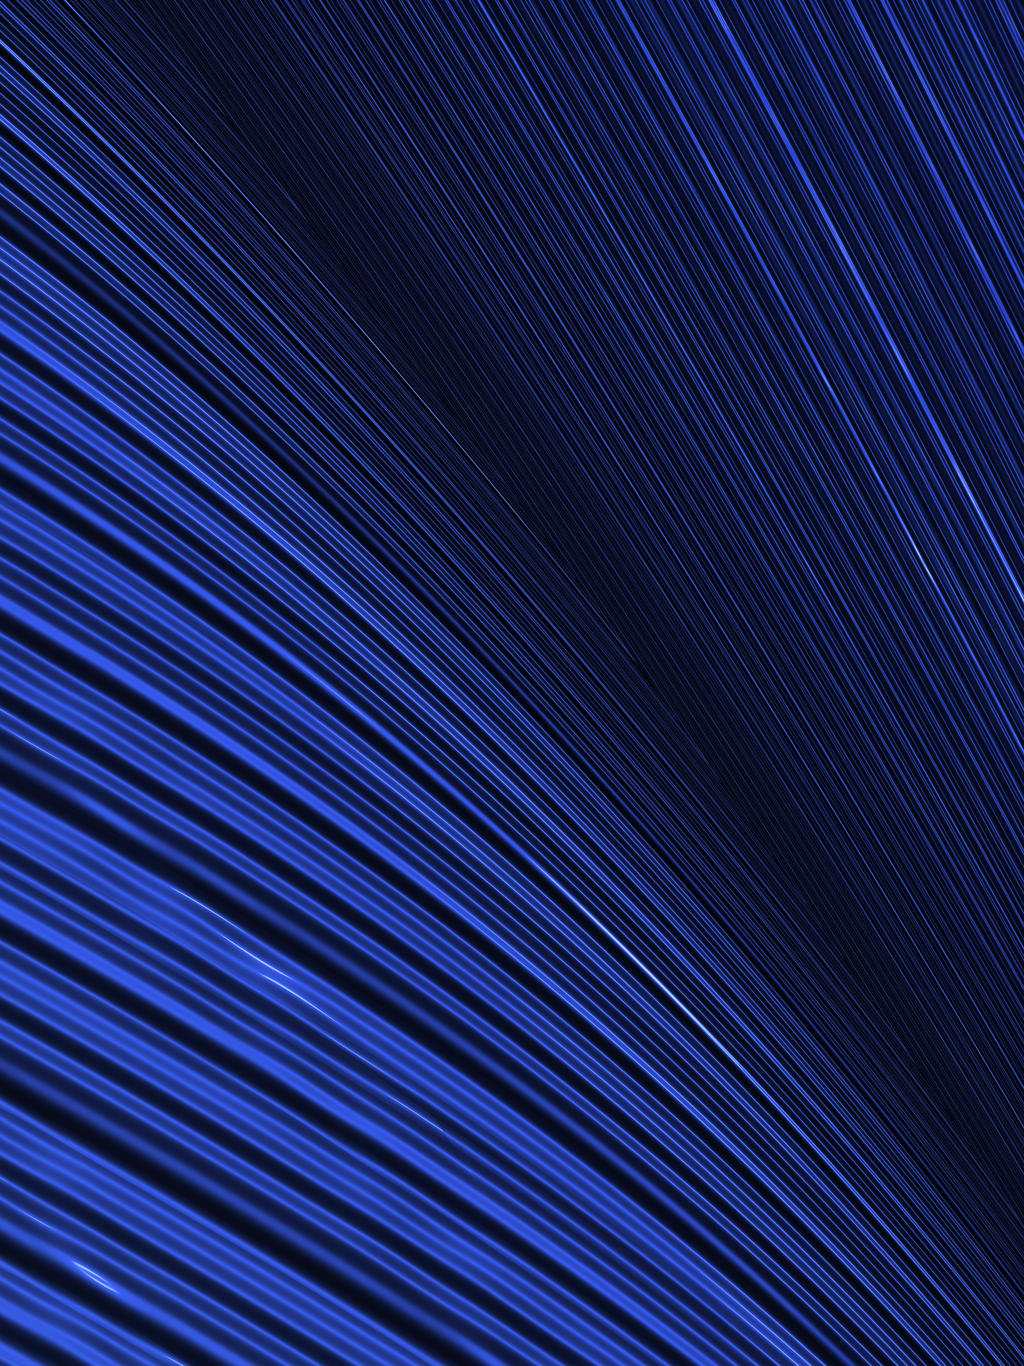 Blue Lines Fractal